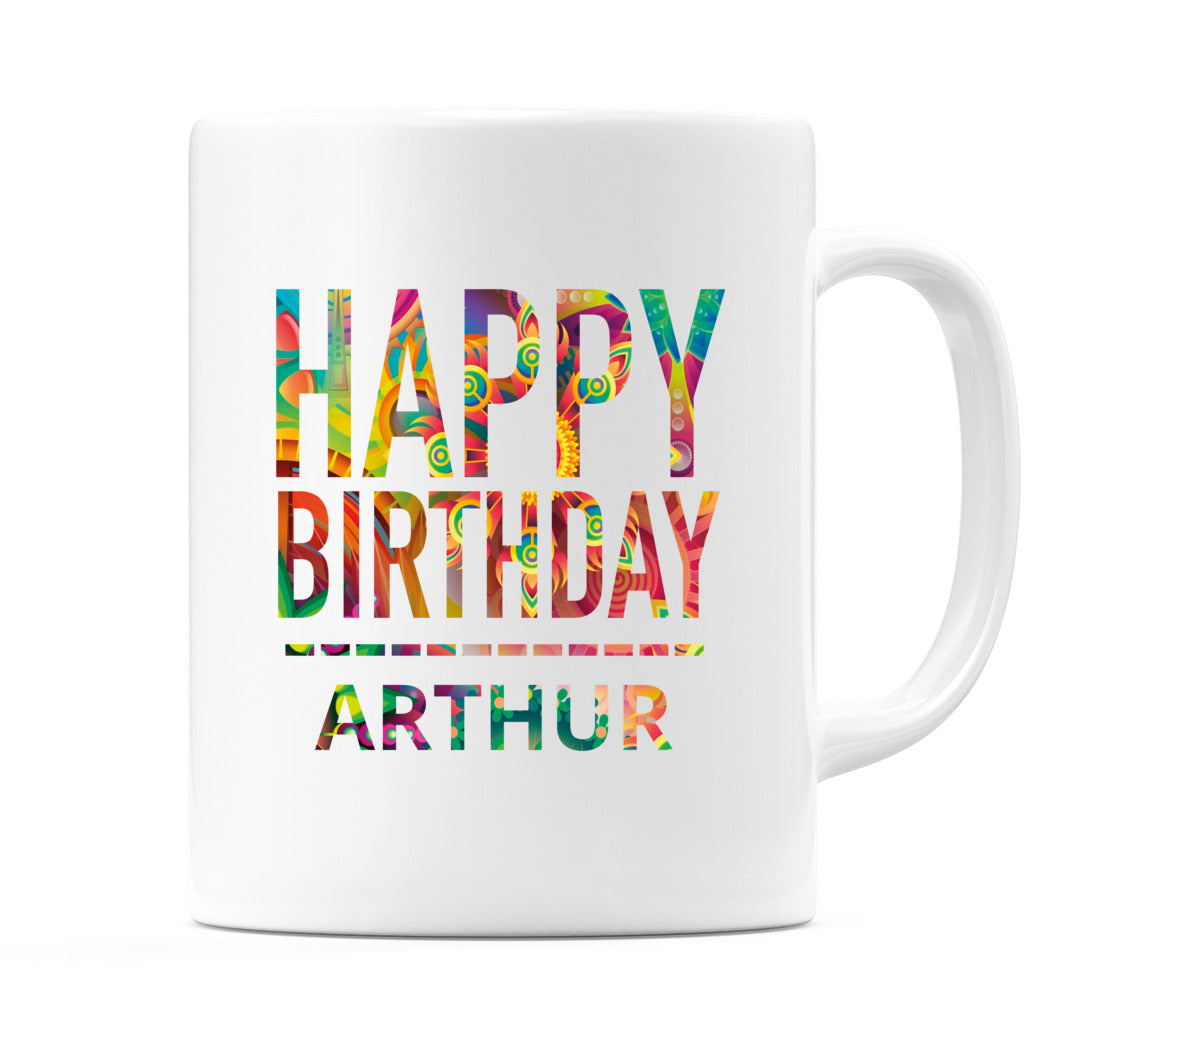 Happy Birthday Arthur (Tie Dye Effect) Mug Cup by WeDoMugs